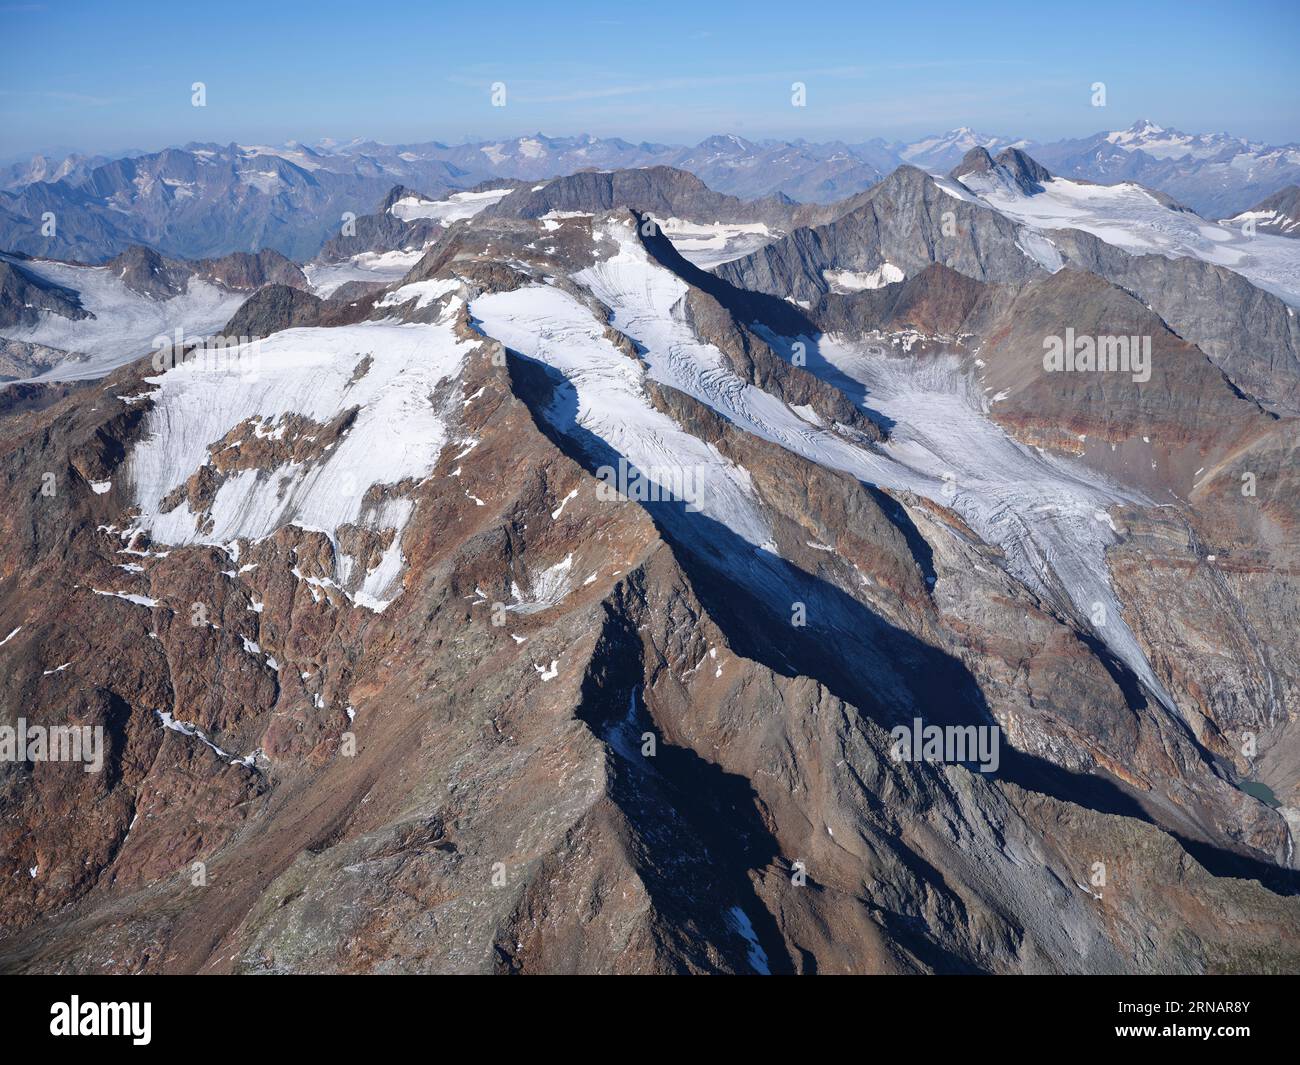 VUE AÉRIENNE. Côté nord du Wilder Freiger (altitude : 3418m). Neustift im Stubaital, Tyrol, Autriche. Banque D'Images